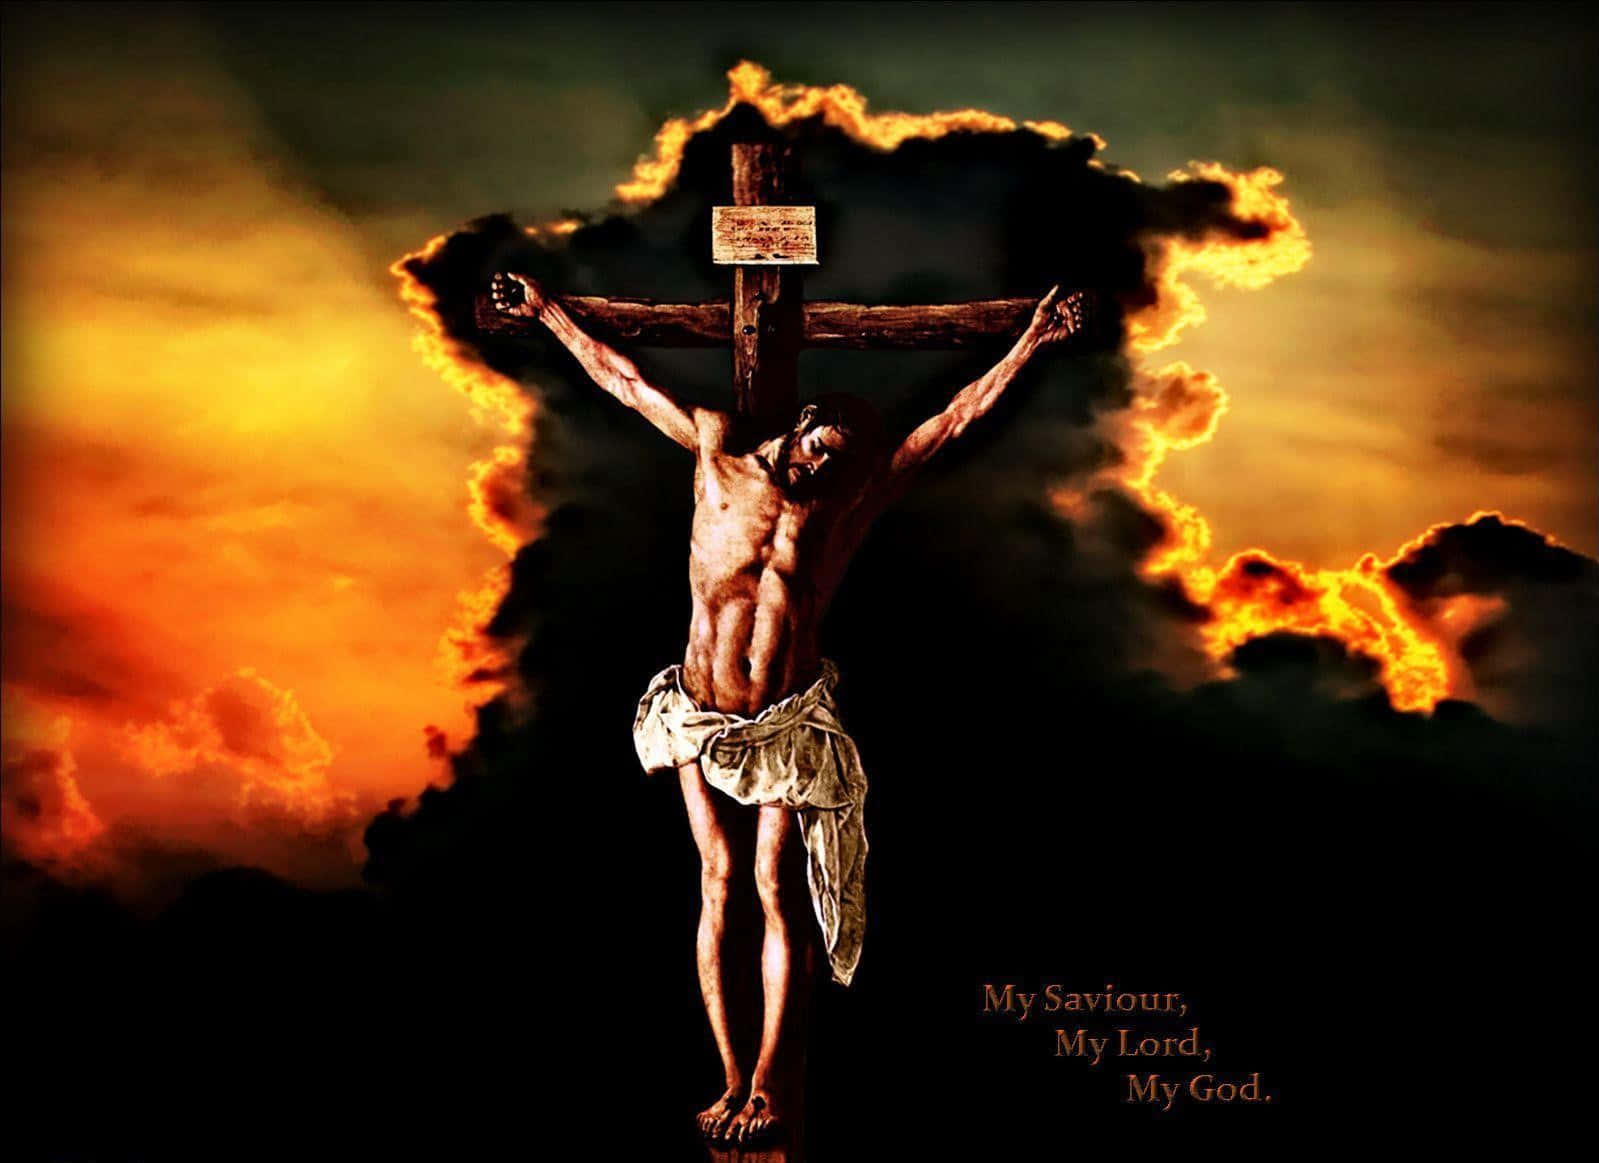 Gesùsulla Croce Con Un'immagine Scura E Densa